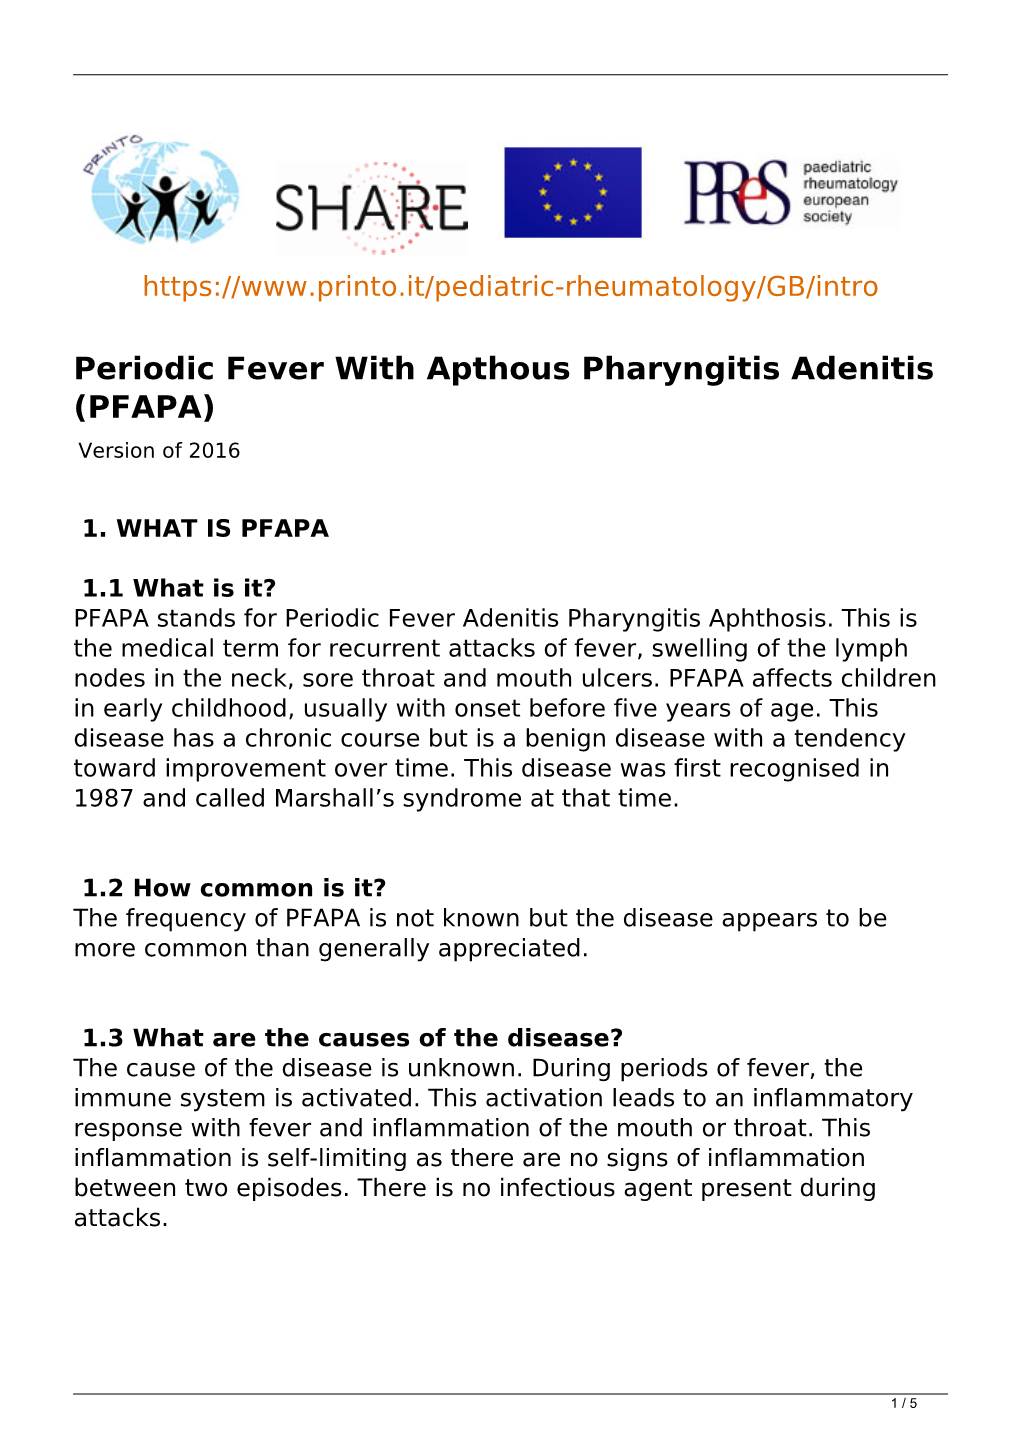 Periodic Fever with Apthous Pharyngitis Adenitis (PFAPA) Version of 2016